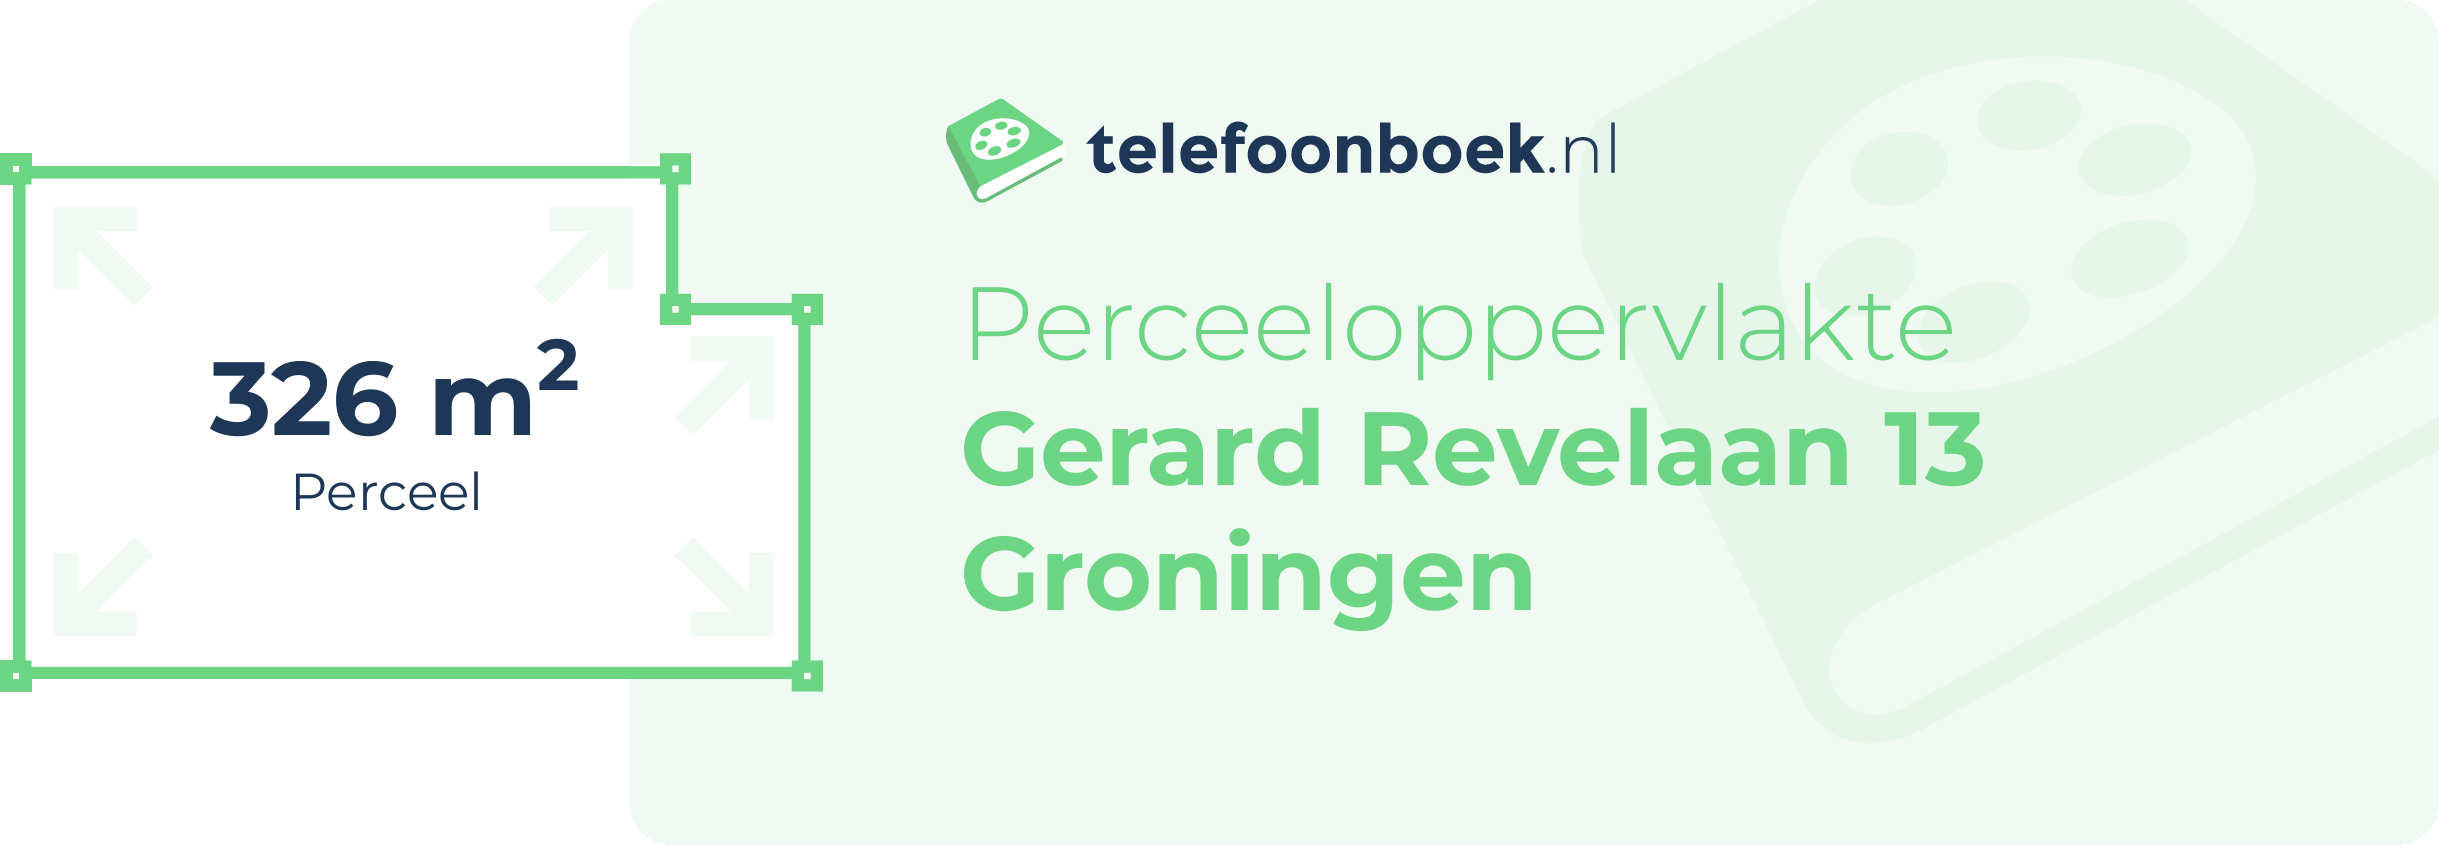 Perceeloppervlakte Gerard Revelaan 13 Groningen